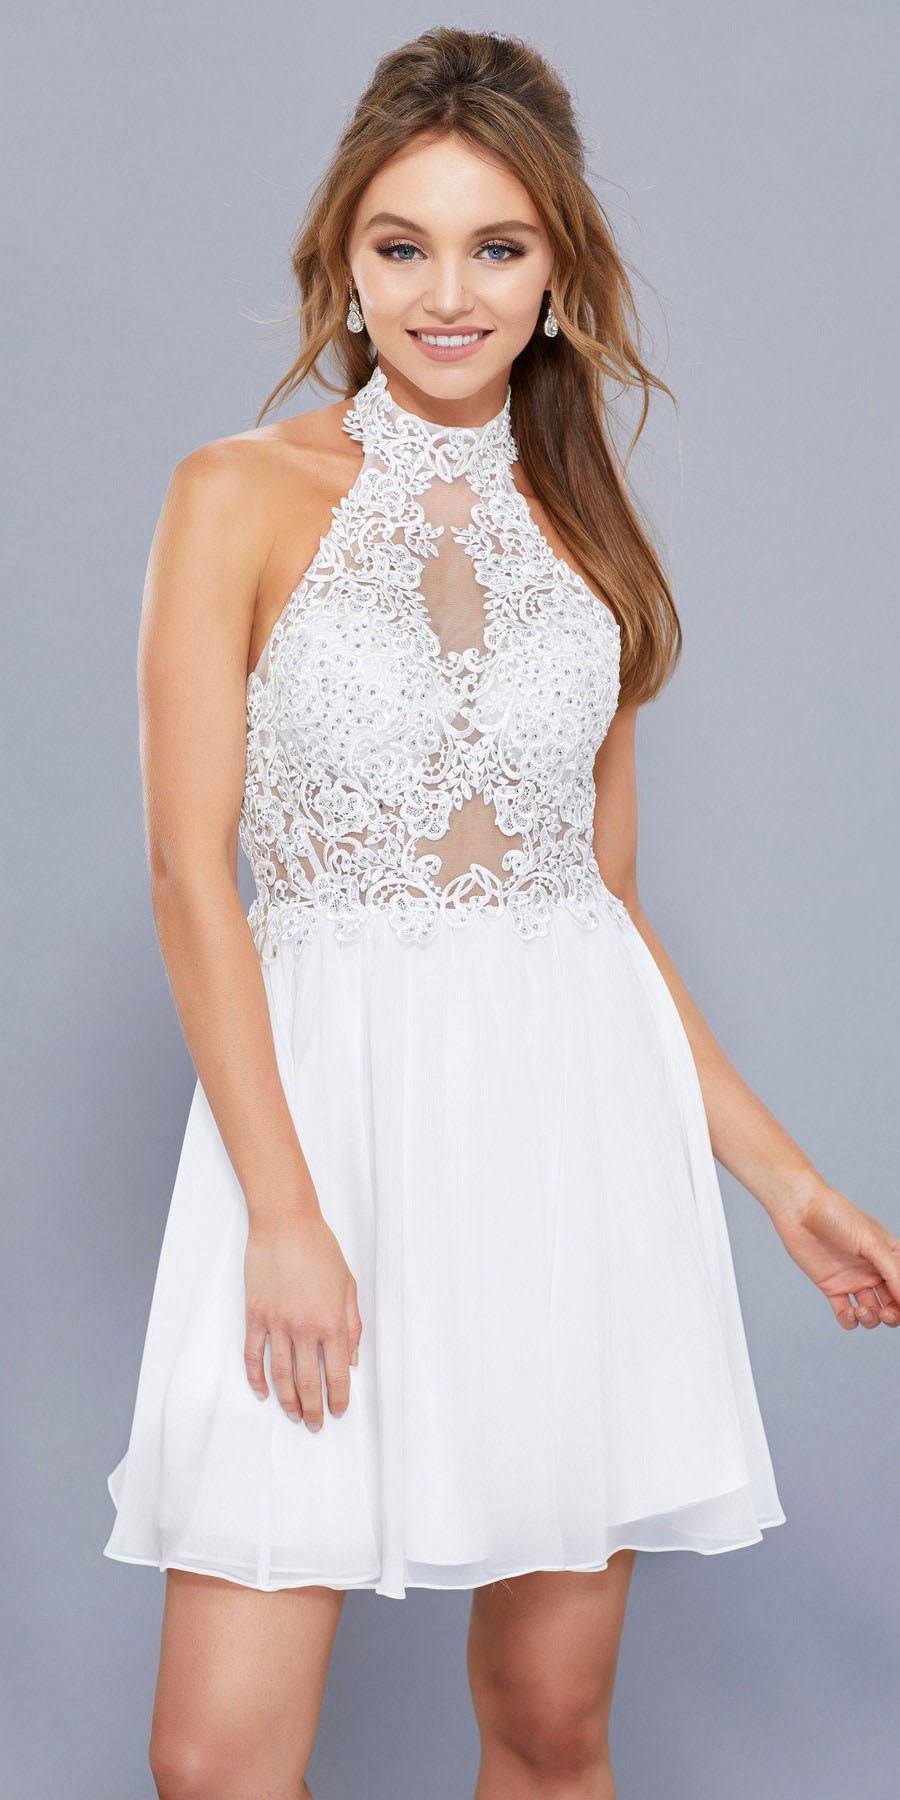 white halter cocktail dress